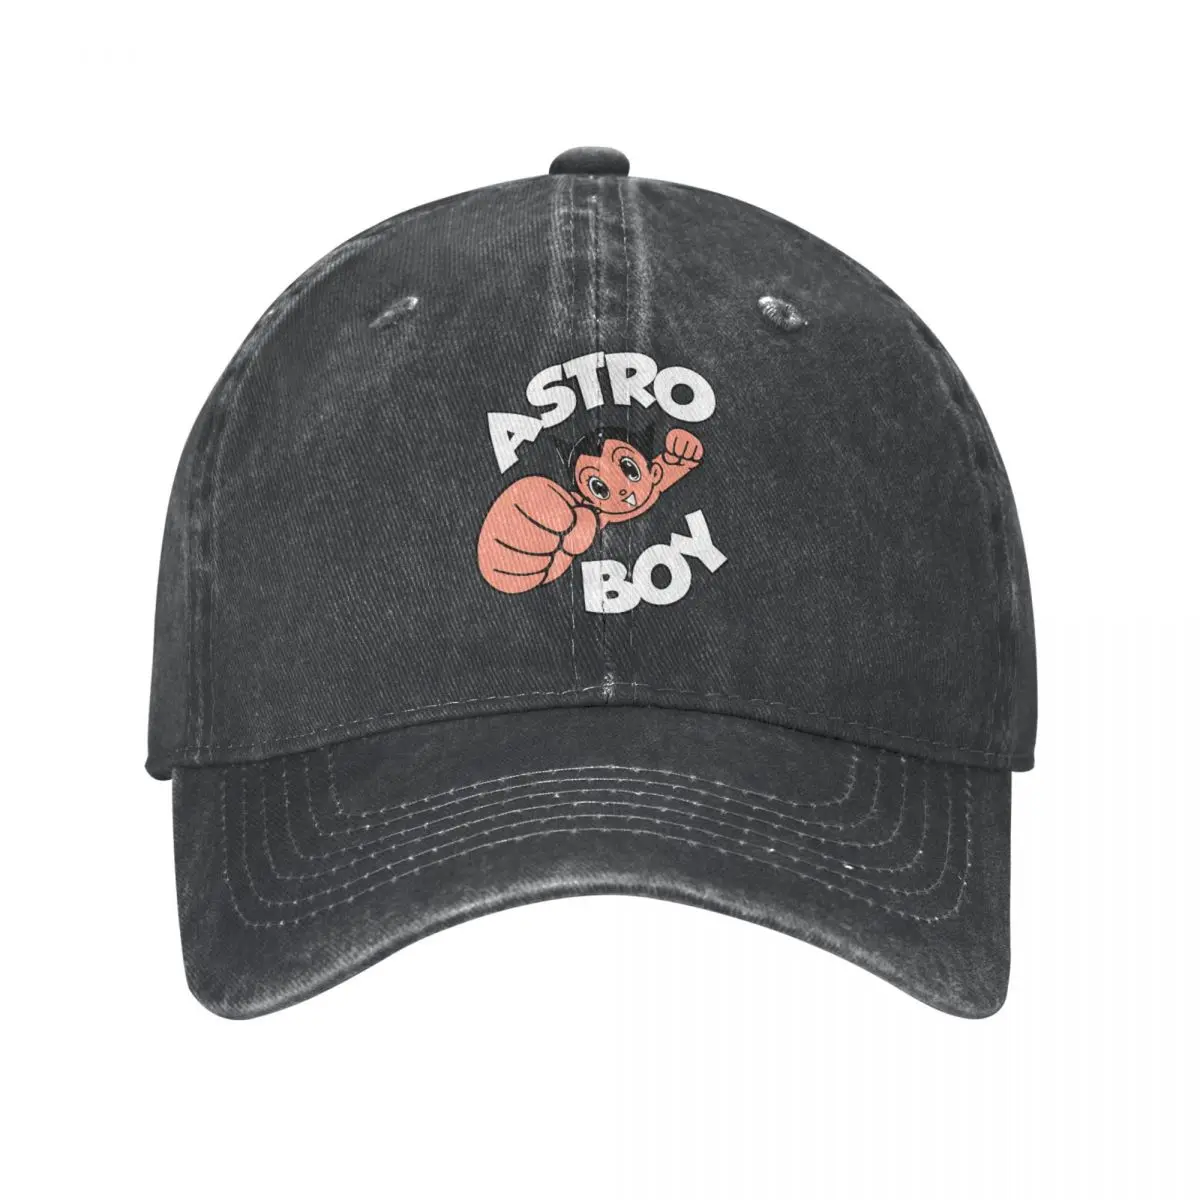 

Vintage Funny Astro Boy Cartoon Trucker Hat for Men Women Distressed Denim Washed Snapback Cap Atom Outdoor Activities Hats Cap